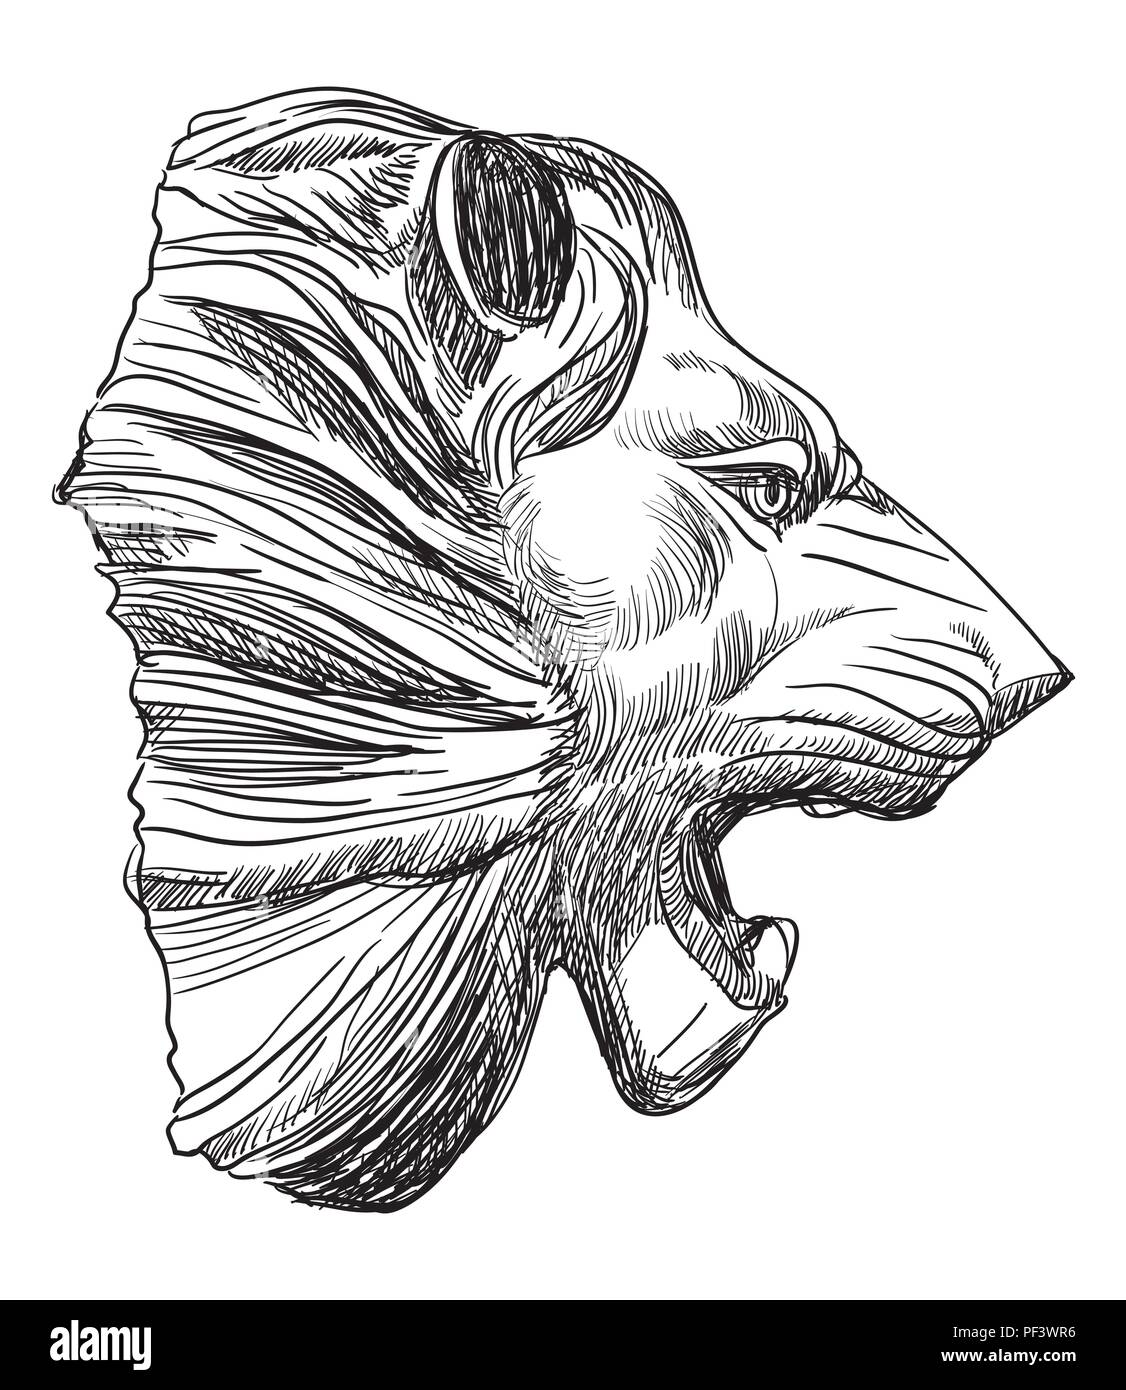 Alte Relief, Skulptur in Form von einen Löwenkopf Profil ansehen, Vektor hand Zeichnung Illustration in schwarzer Farbe auf weißem Hintergrund Stock Vektor